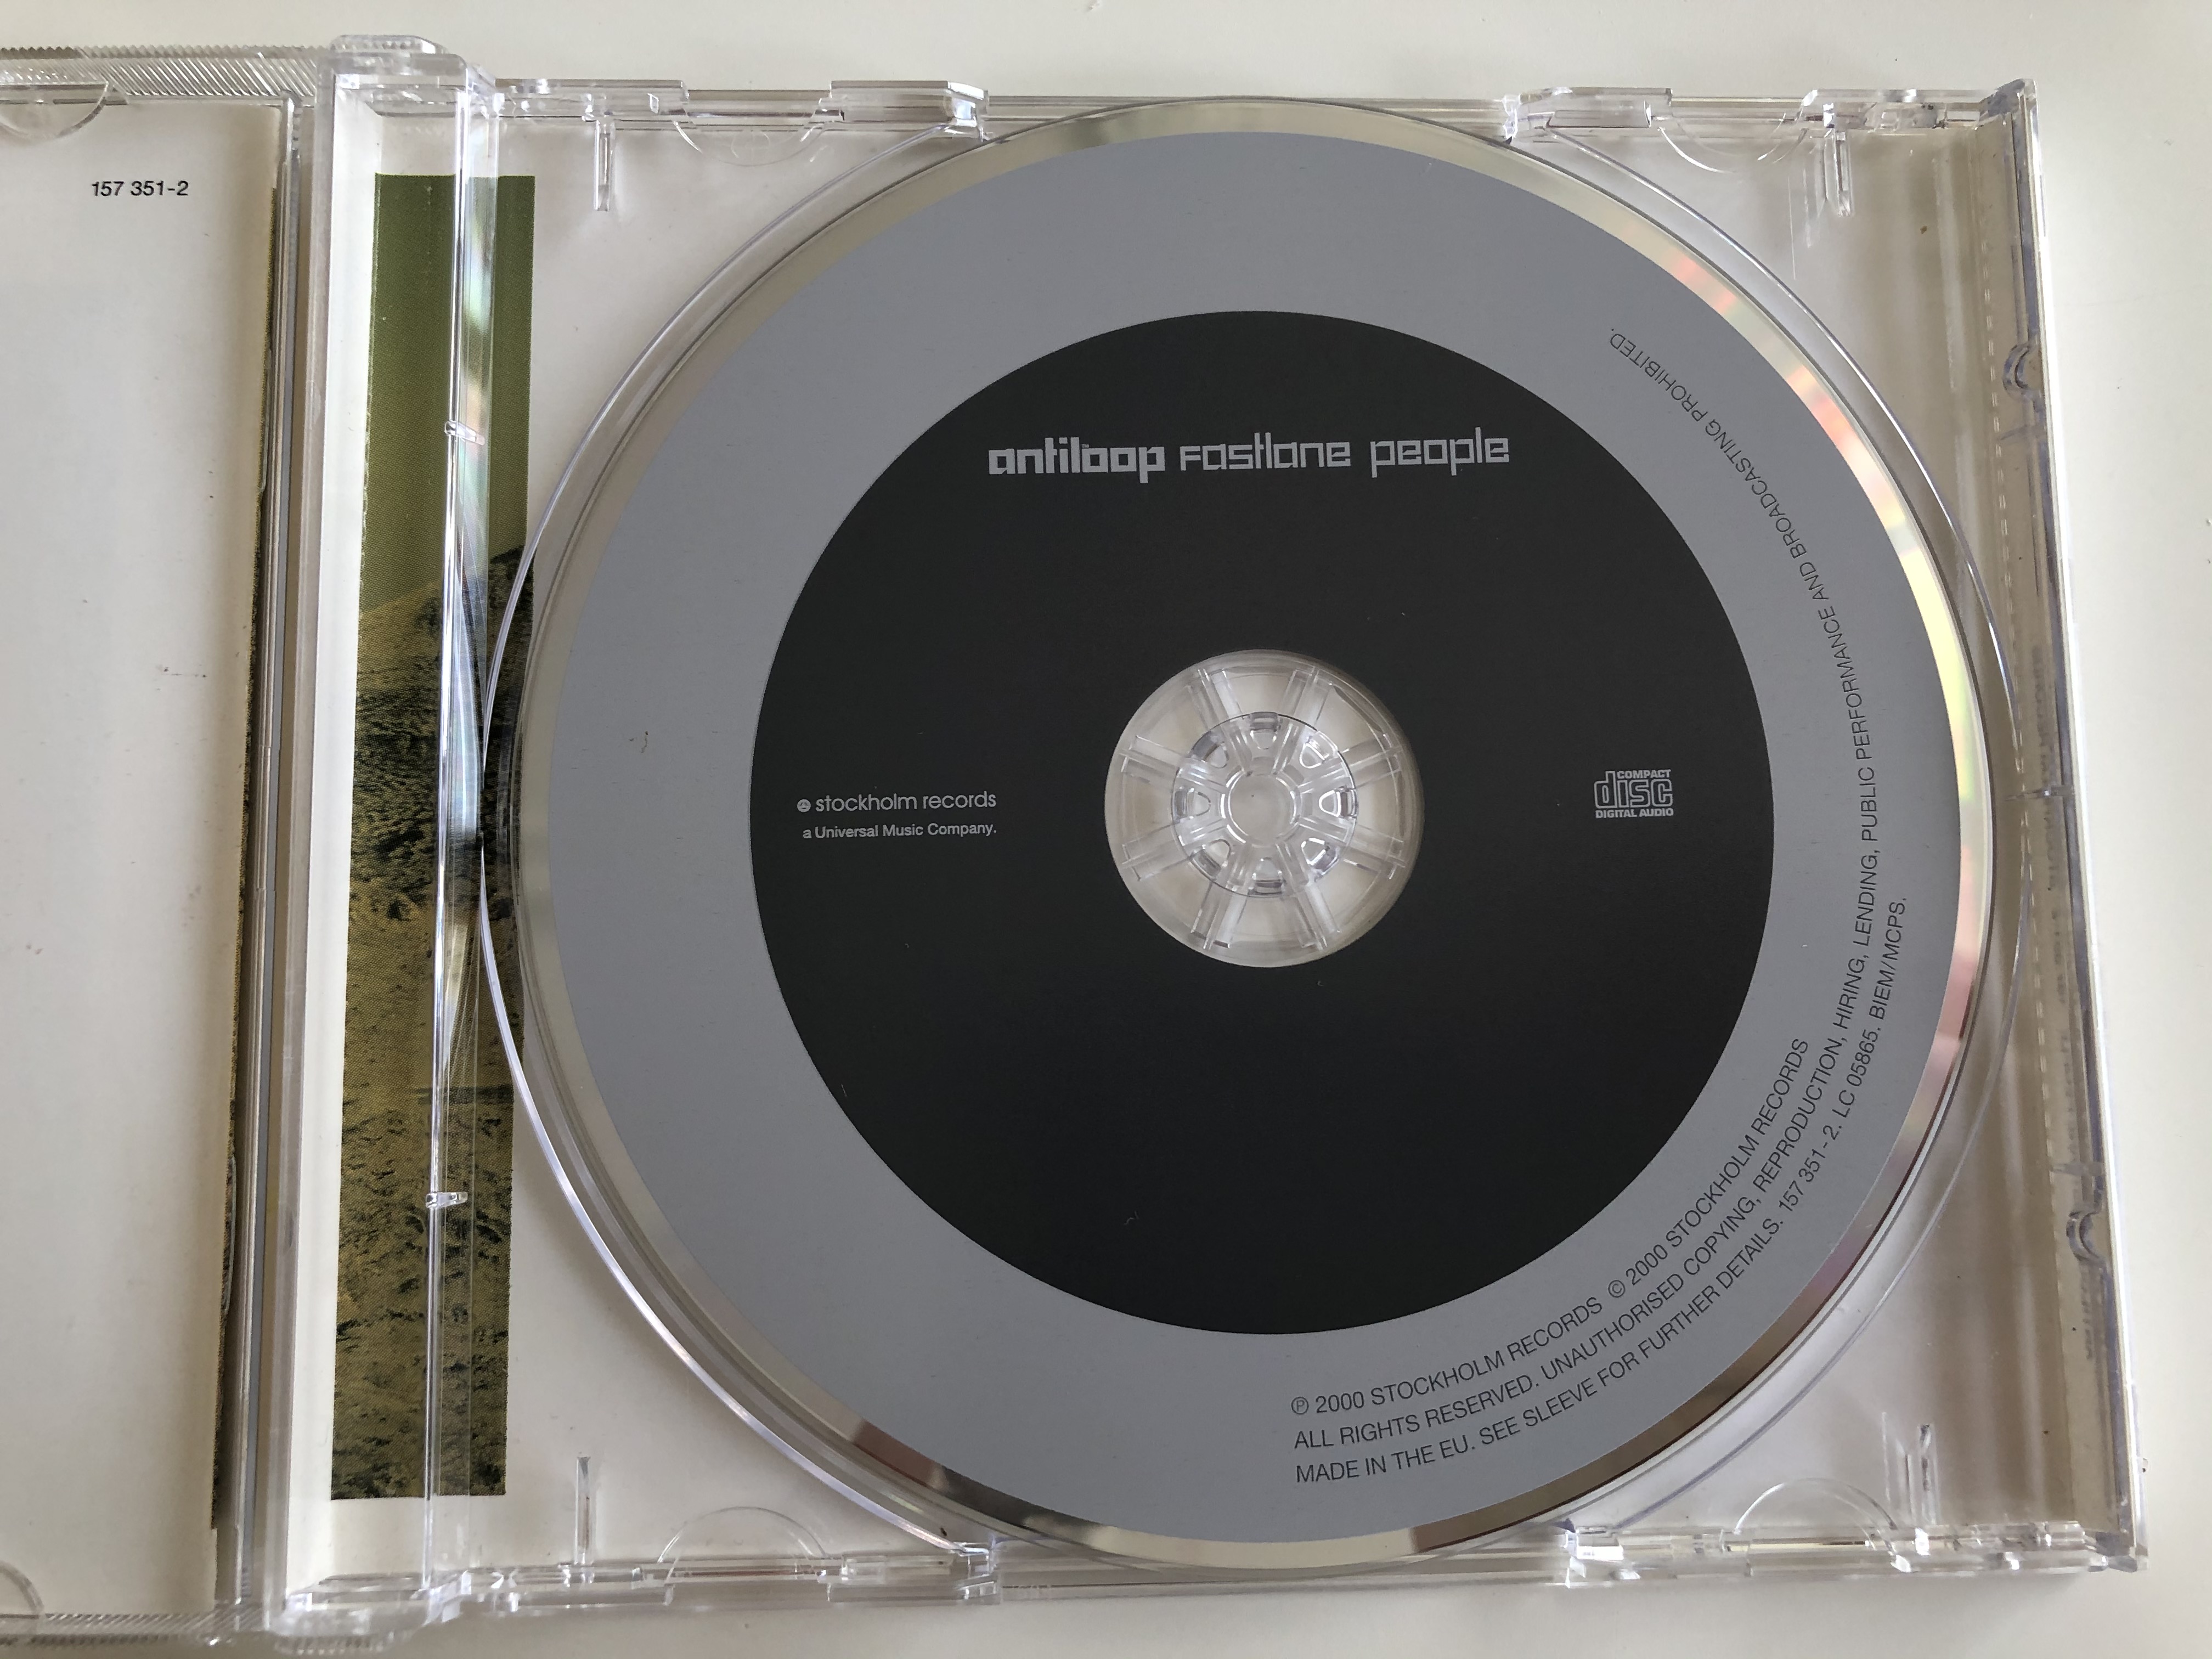 antiloop-fastlane-people-stockholm-records-audio-cd-2000-157-351-2-6-.jpg